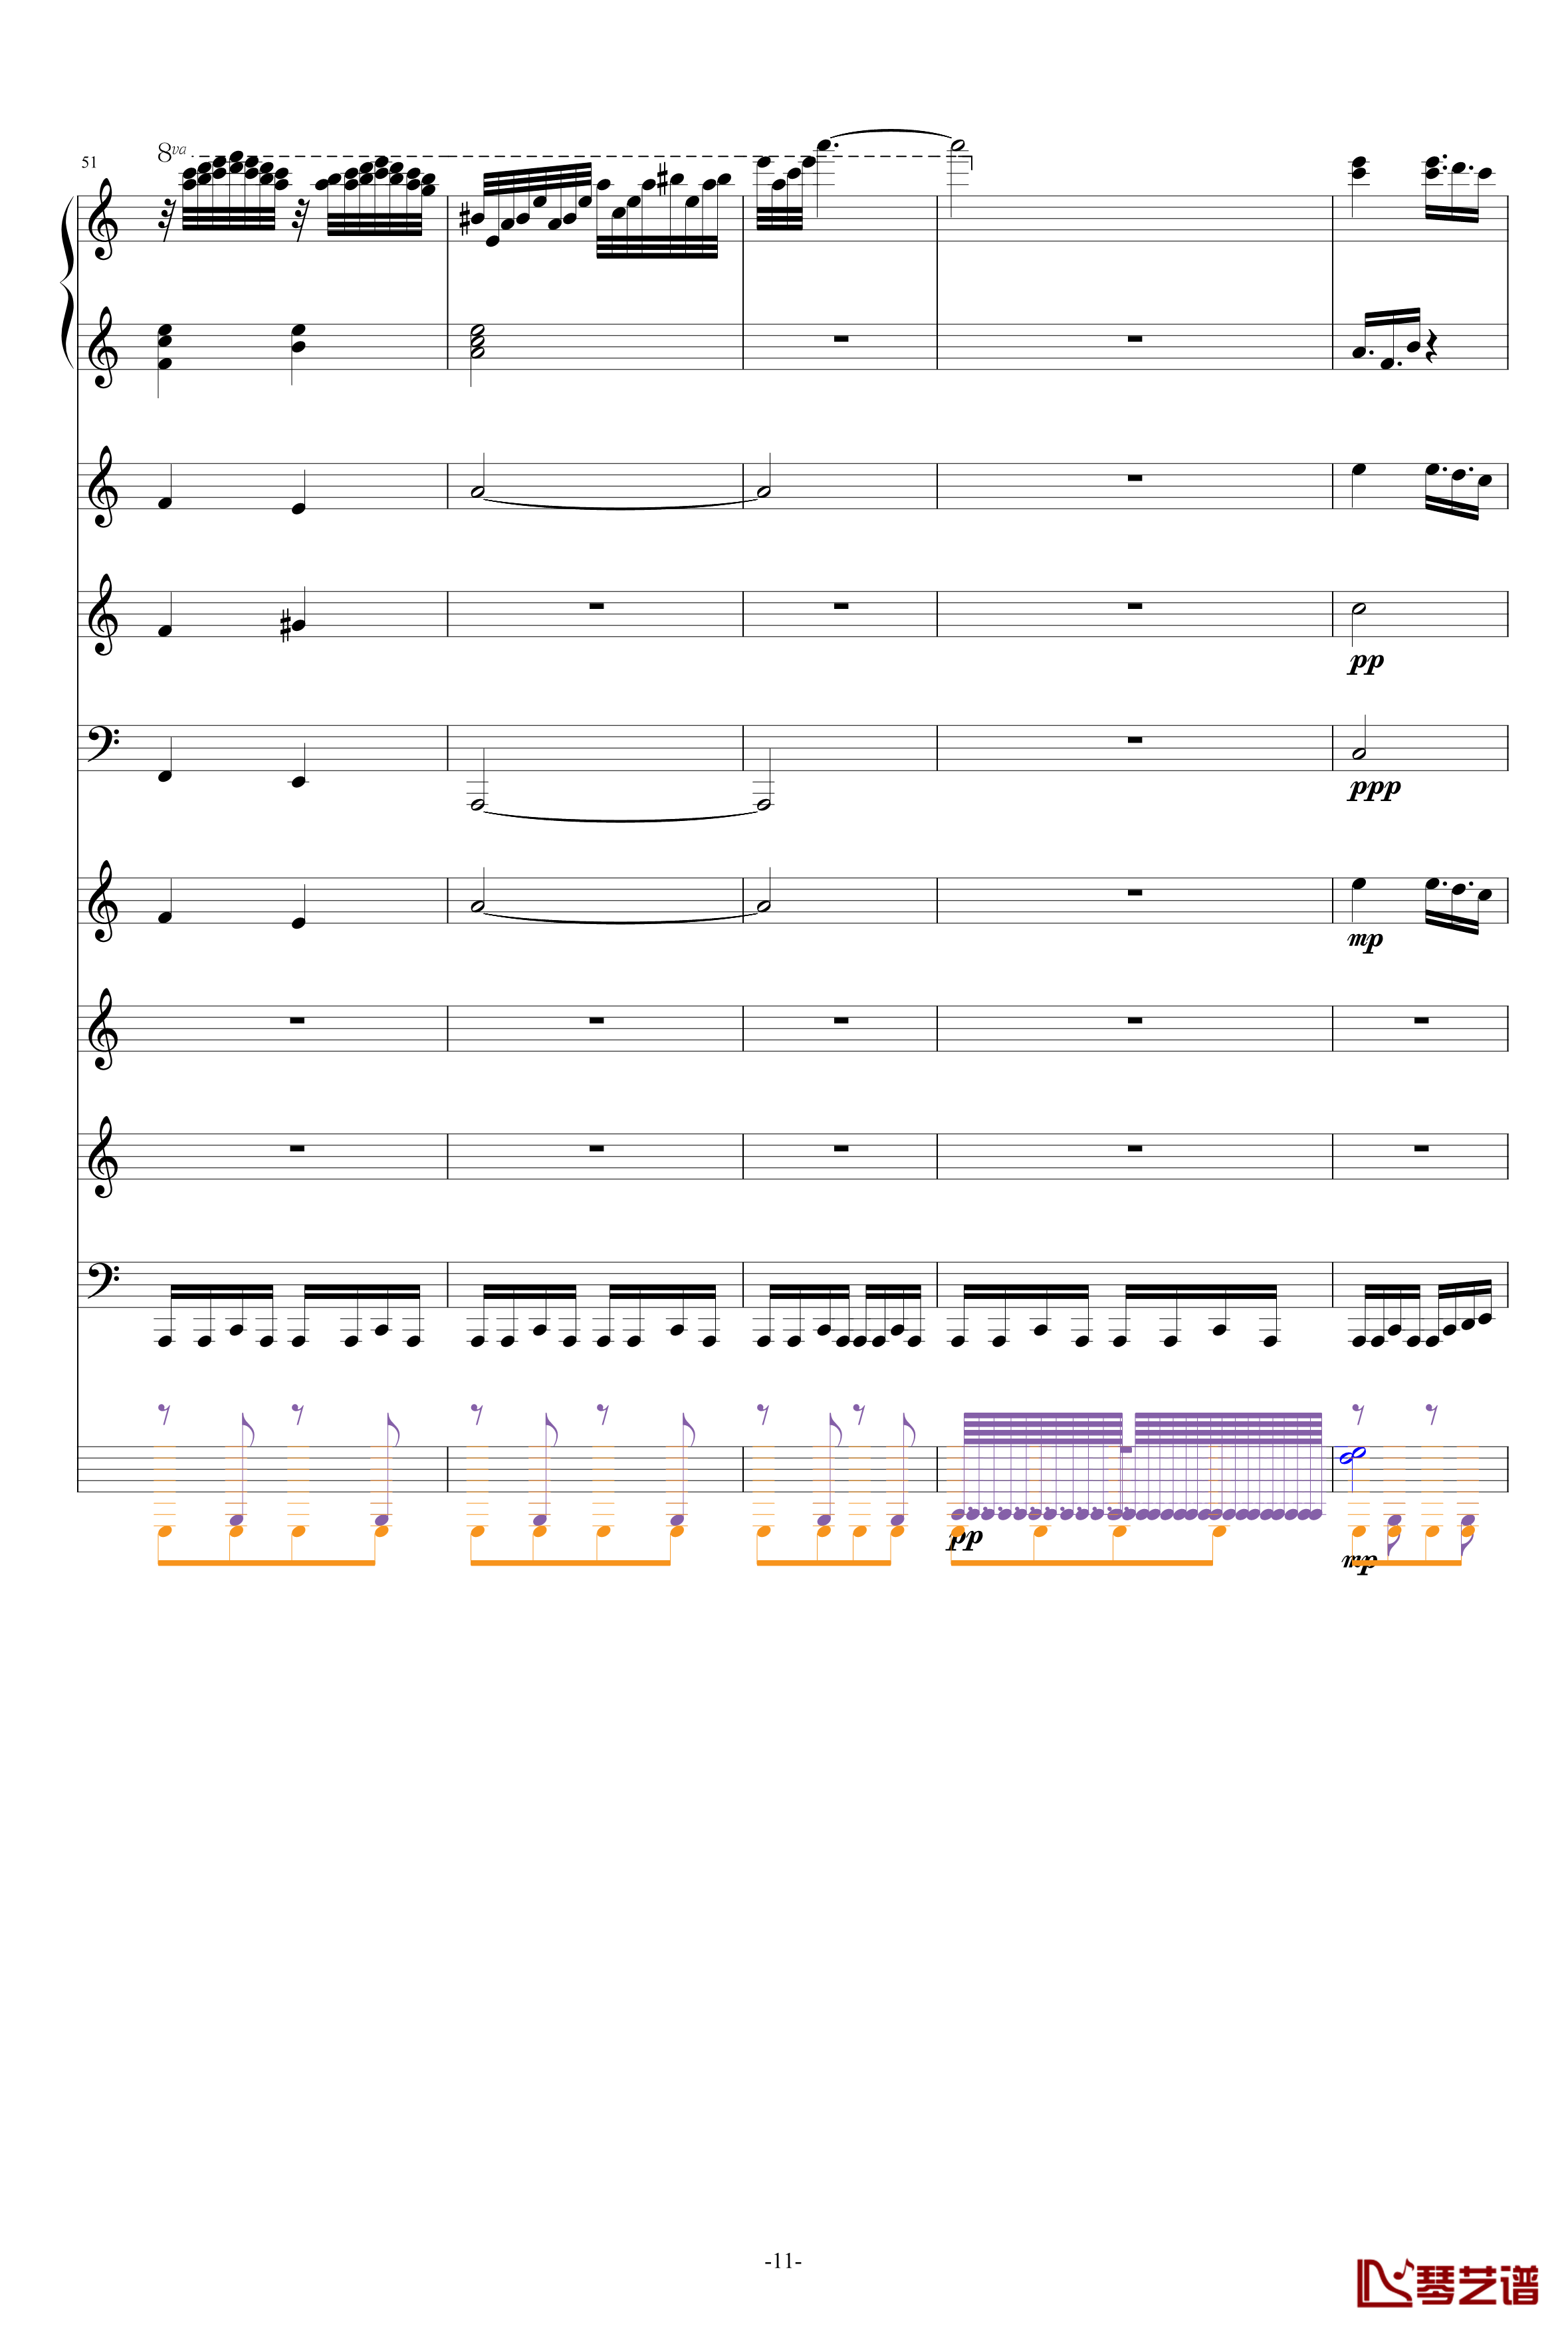 巴兰榭狂想曲钢琴谱-卓越之剑-总谱11